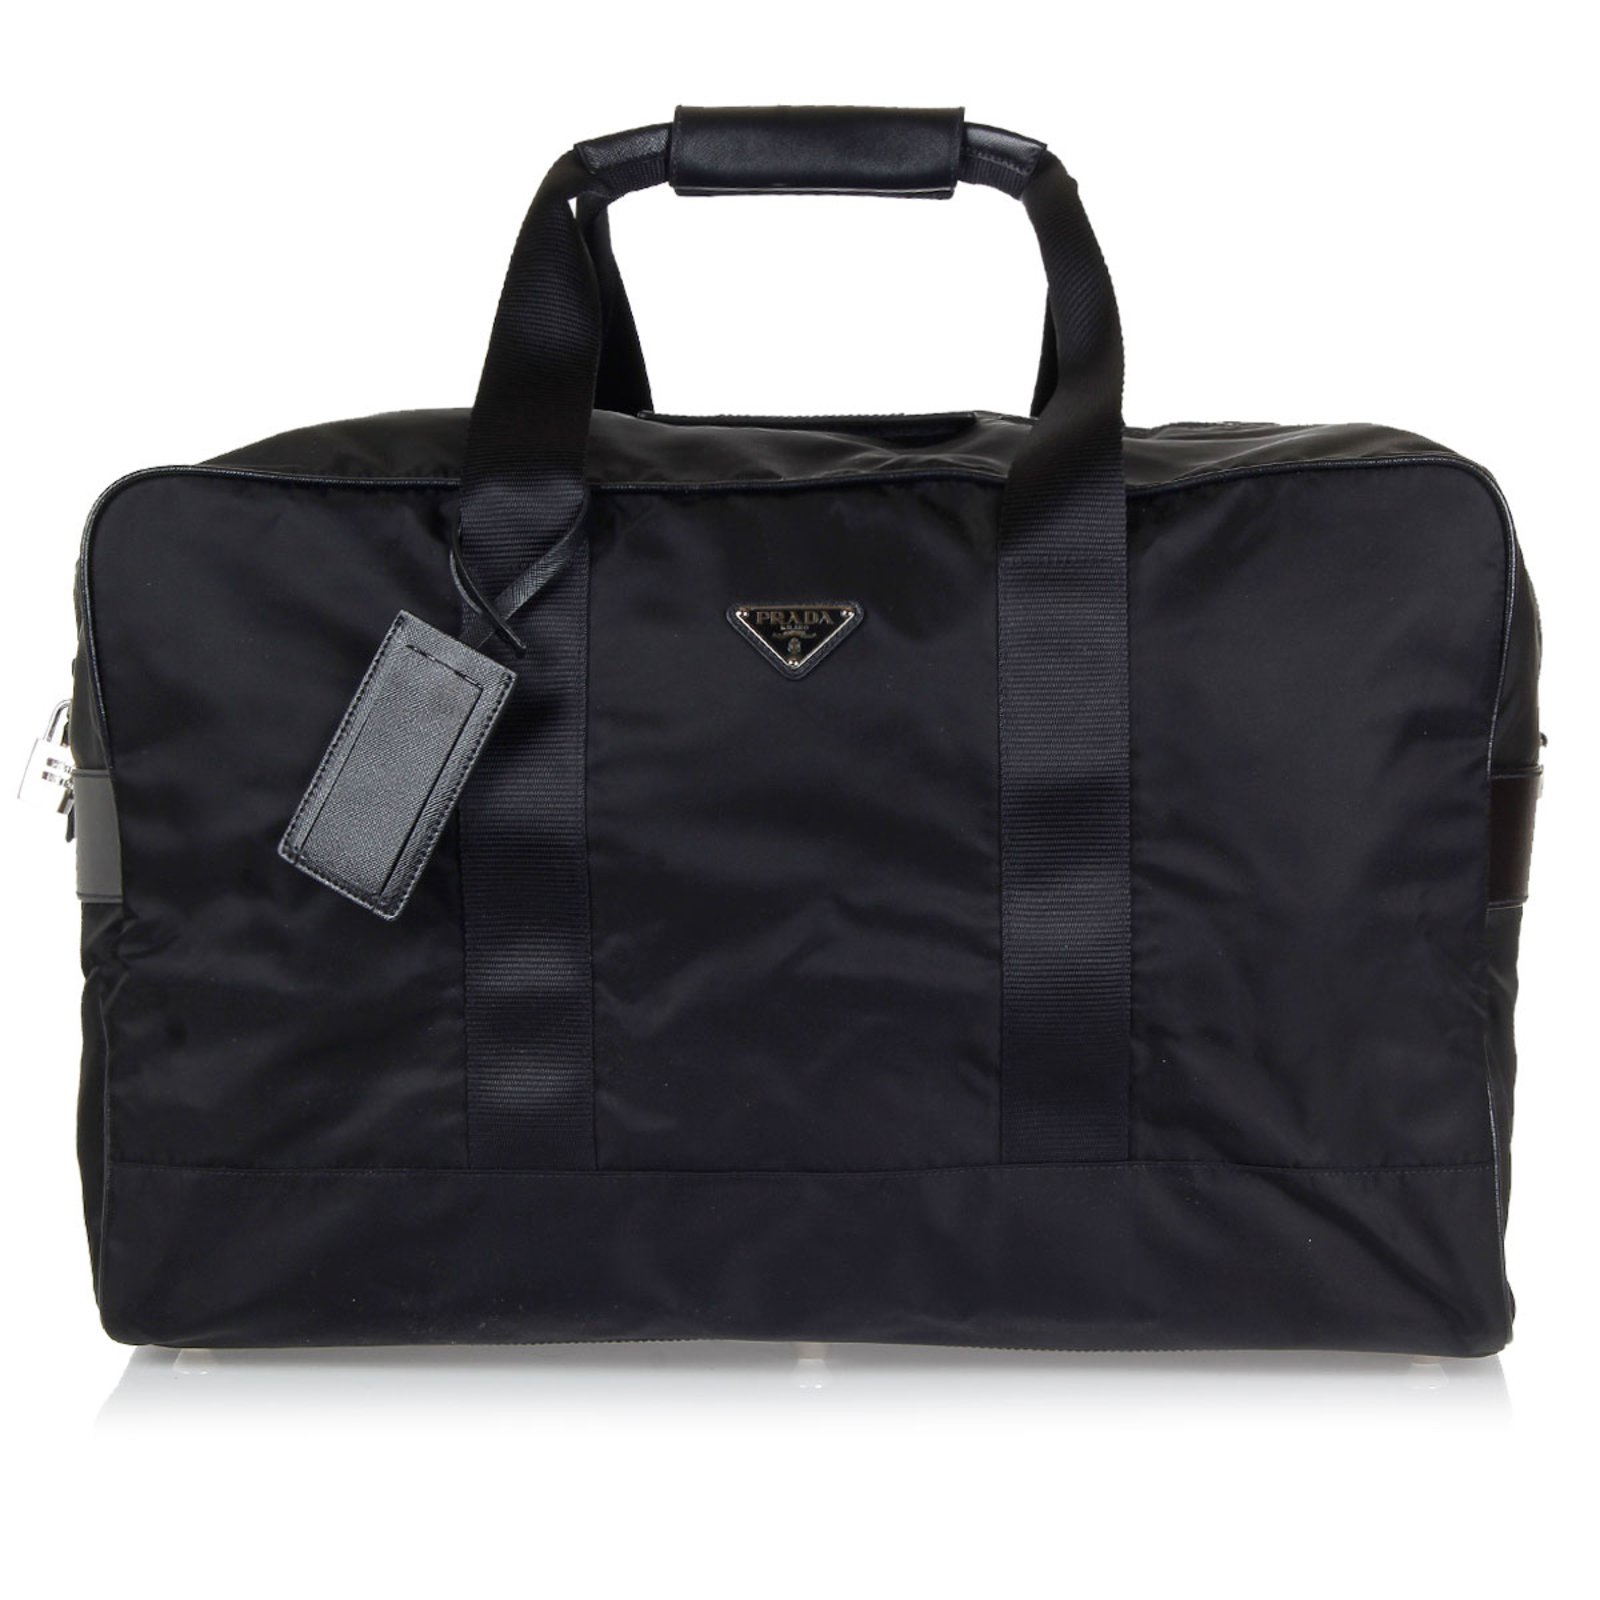 Prada Large Vela Nylon Duffle Bag VA0933 Black – BRANDS N BAGS